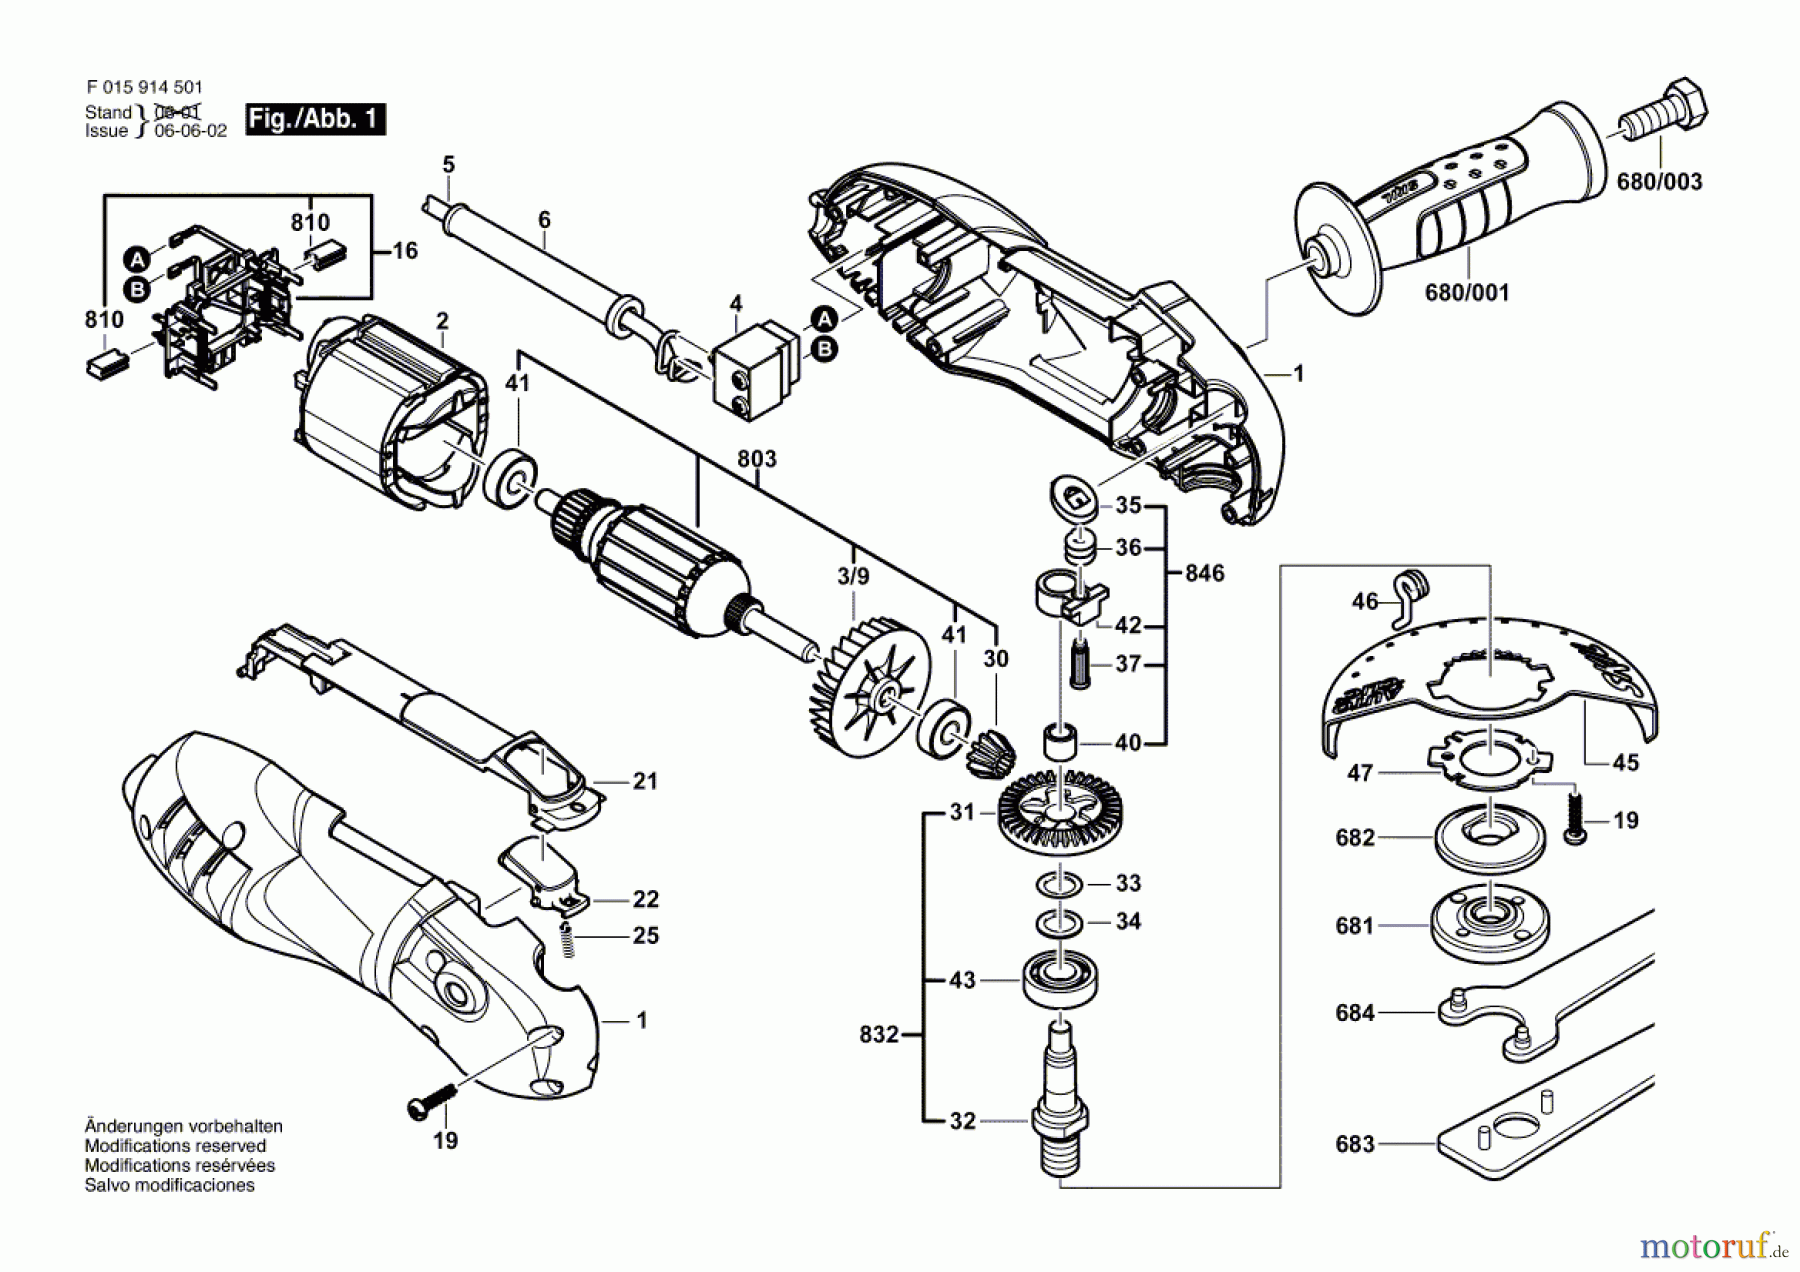  Bosch Werkzeug Winkelschleifer 9146 Seite 1